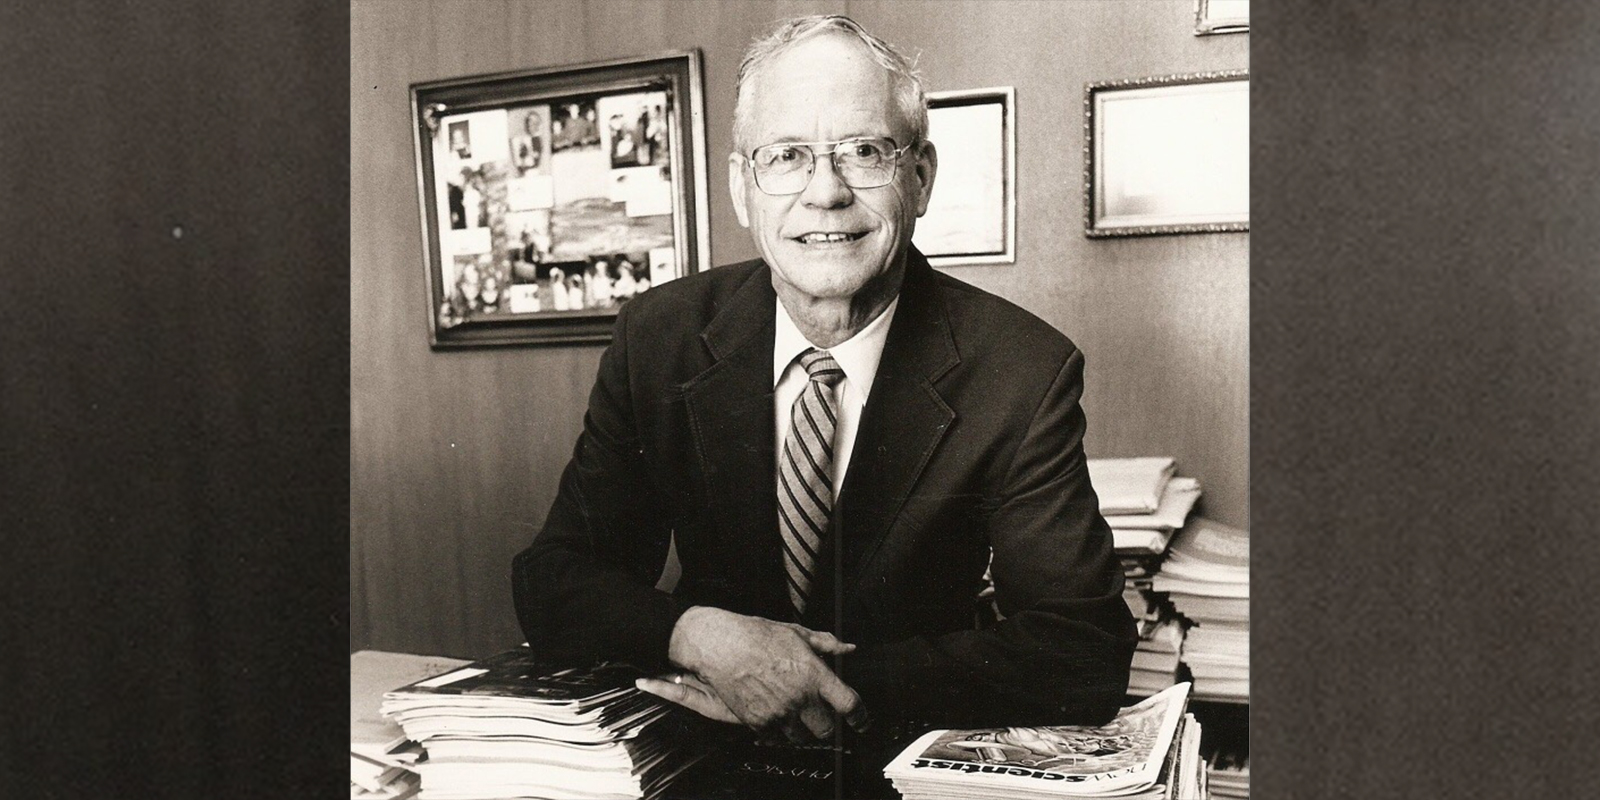 Dr. Robert Packard